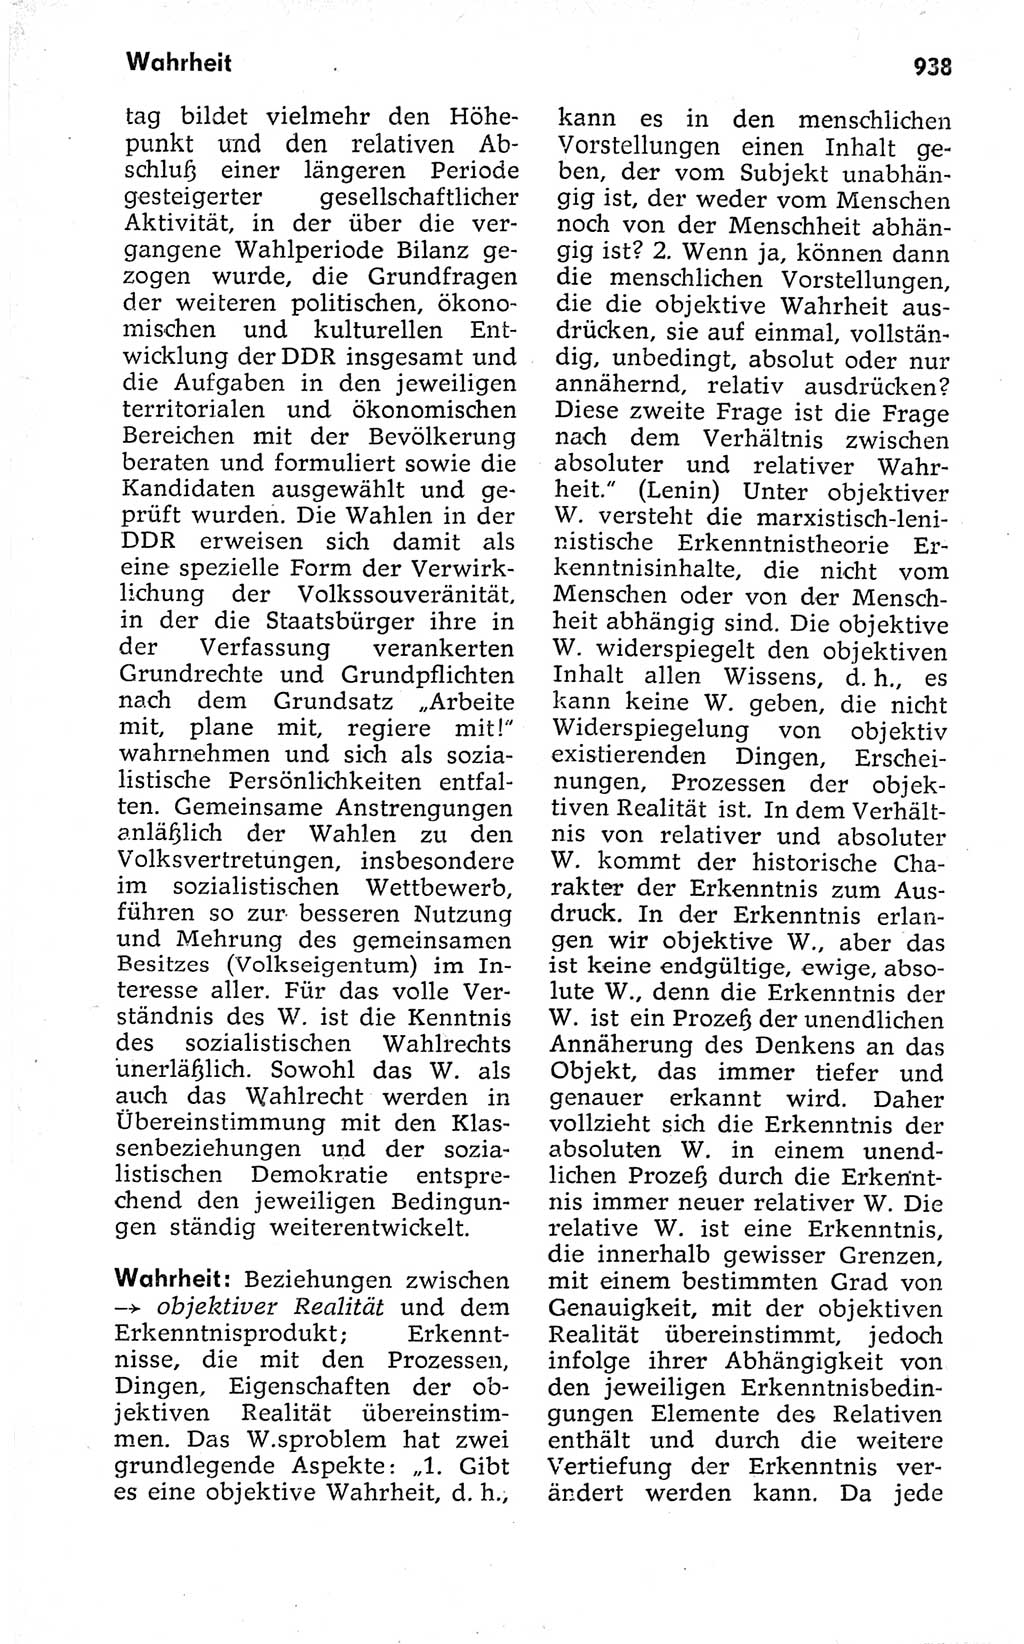 Kleines politisches Wörterbuch [Deutsche Demokratische Republik (DDR)] 1973, Seite 938 (Kl. pol. Wb. DDR 1973, S. 938)